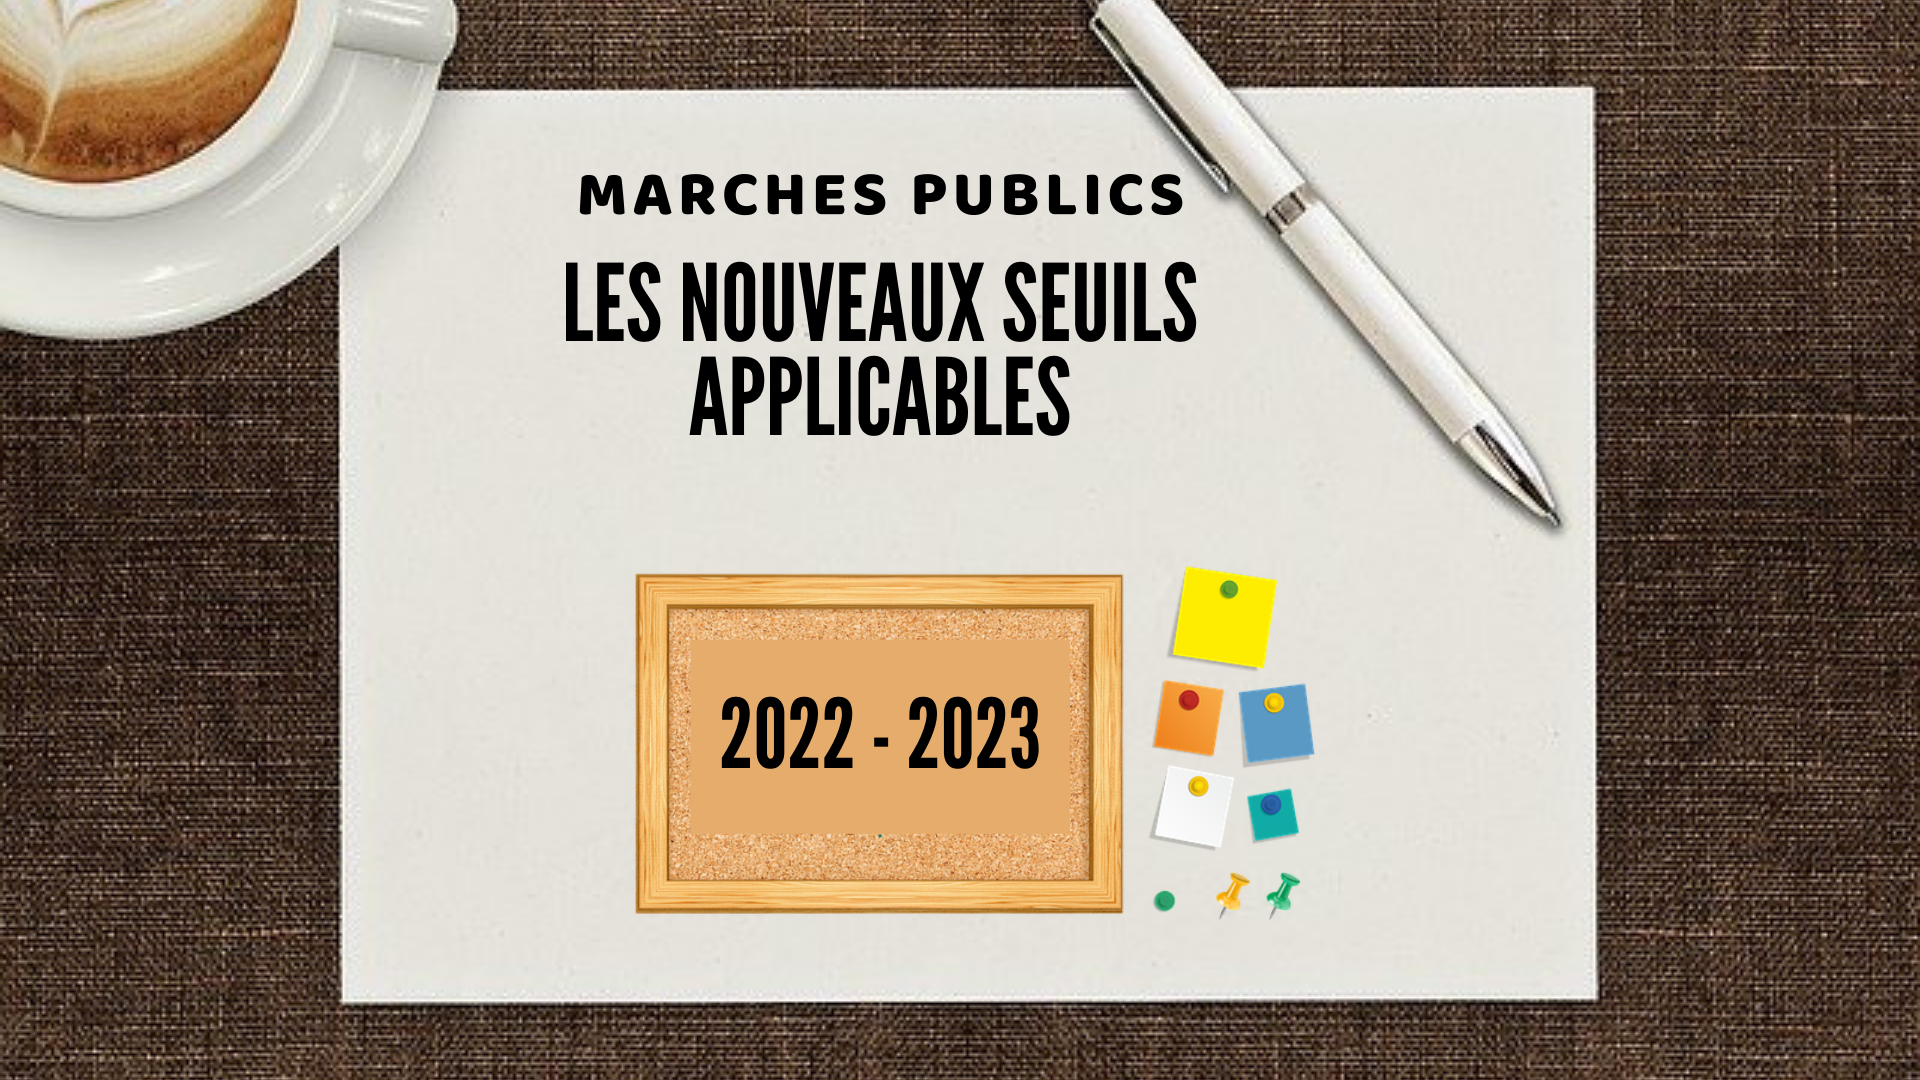 Les seuils en marchés publics applicables pour les années 2022-2023